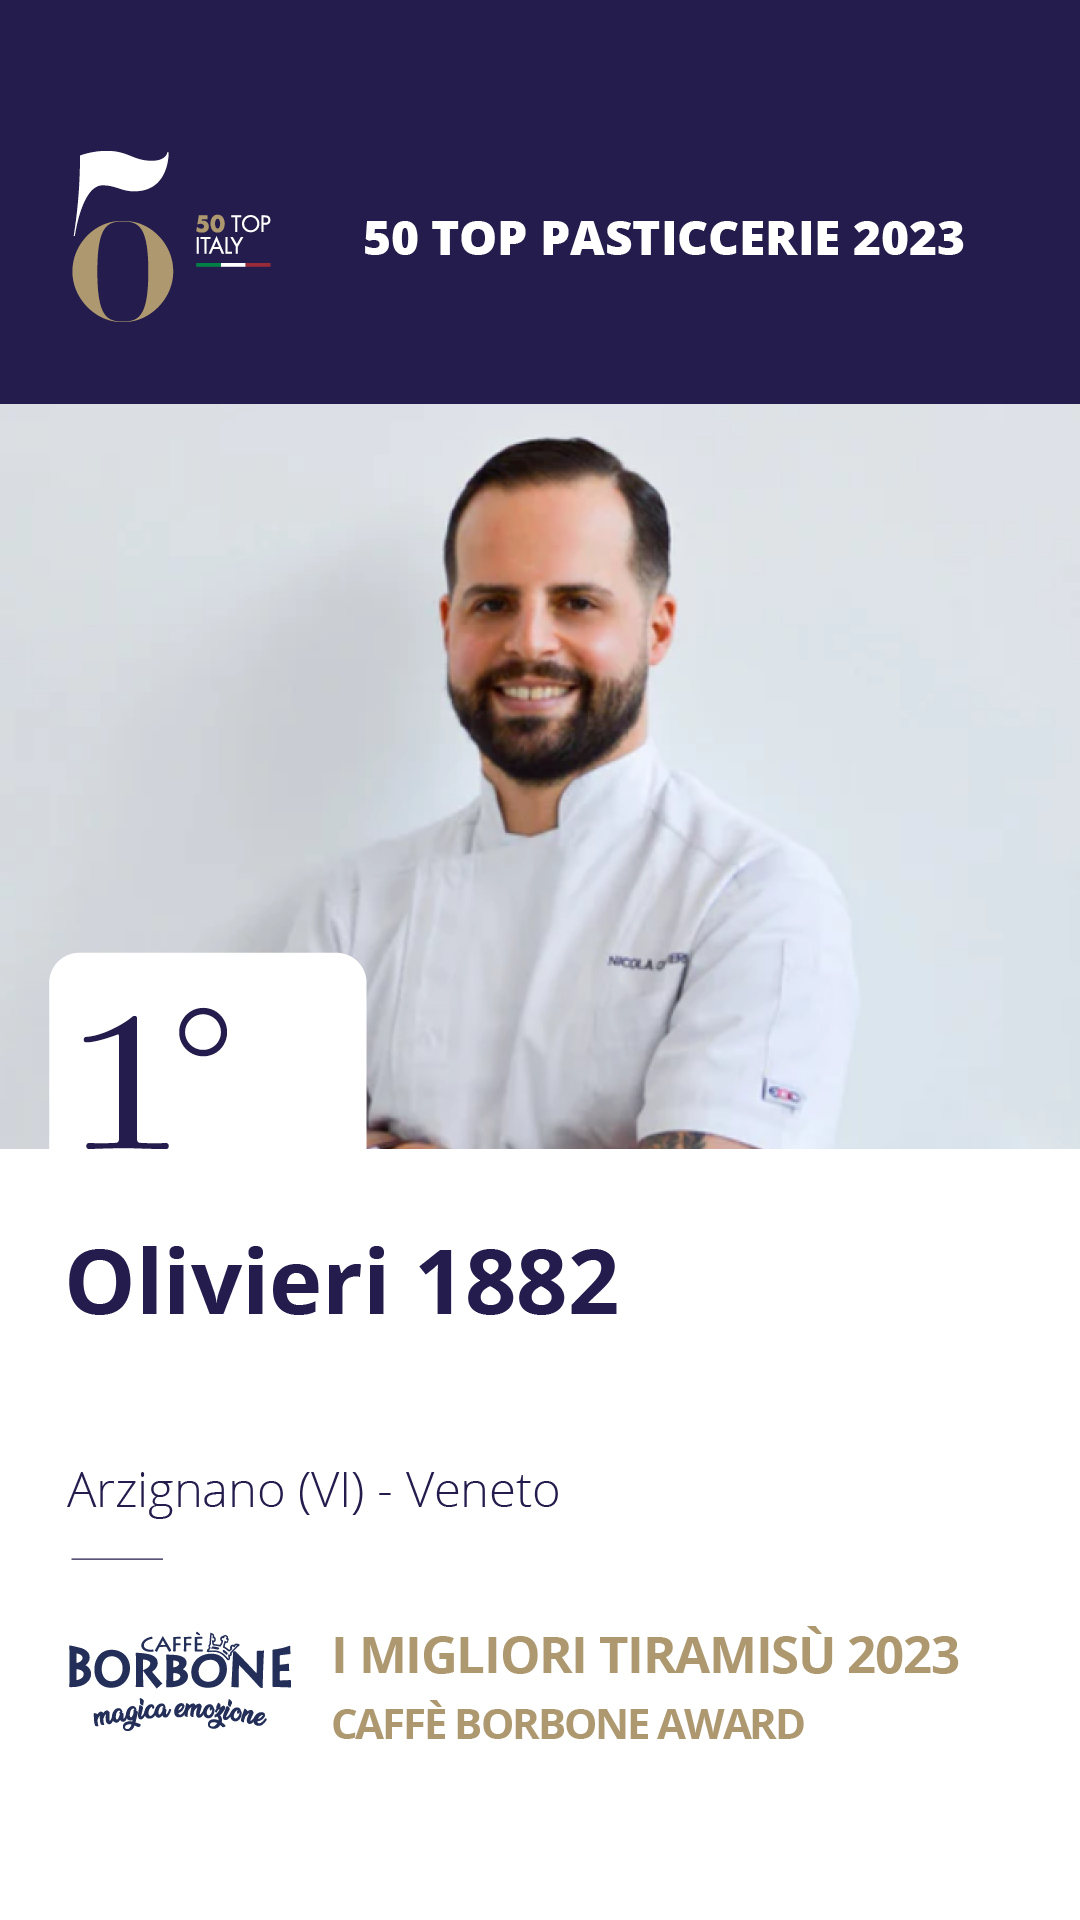 1. Olivieri 1882 - Arzignano (VI), Veneto